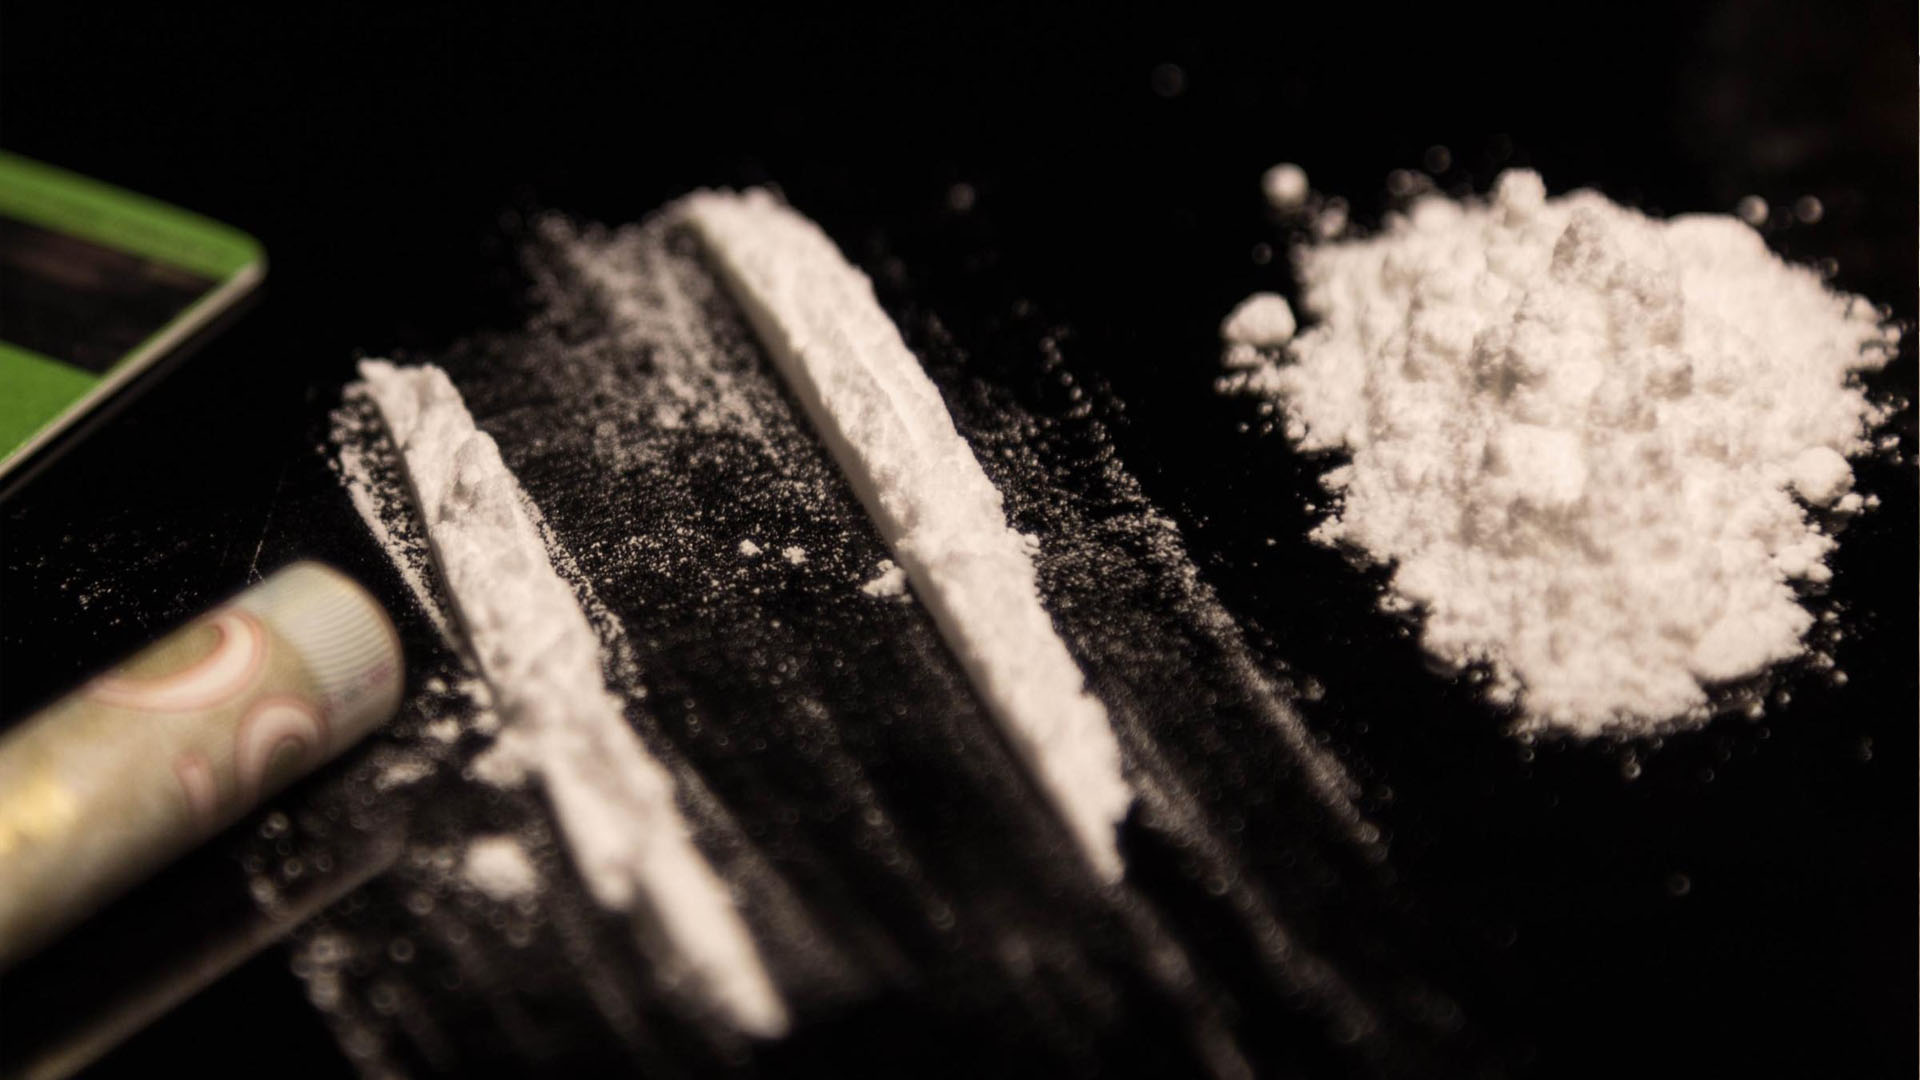 Brit nyomozók szerint a nagy európai bűnszövetkezetek együttműködnek, hogy minél több kokaint hozzanak be a kontinensre